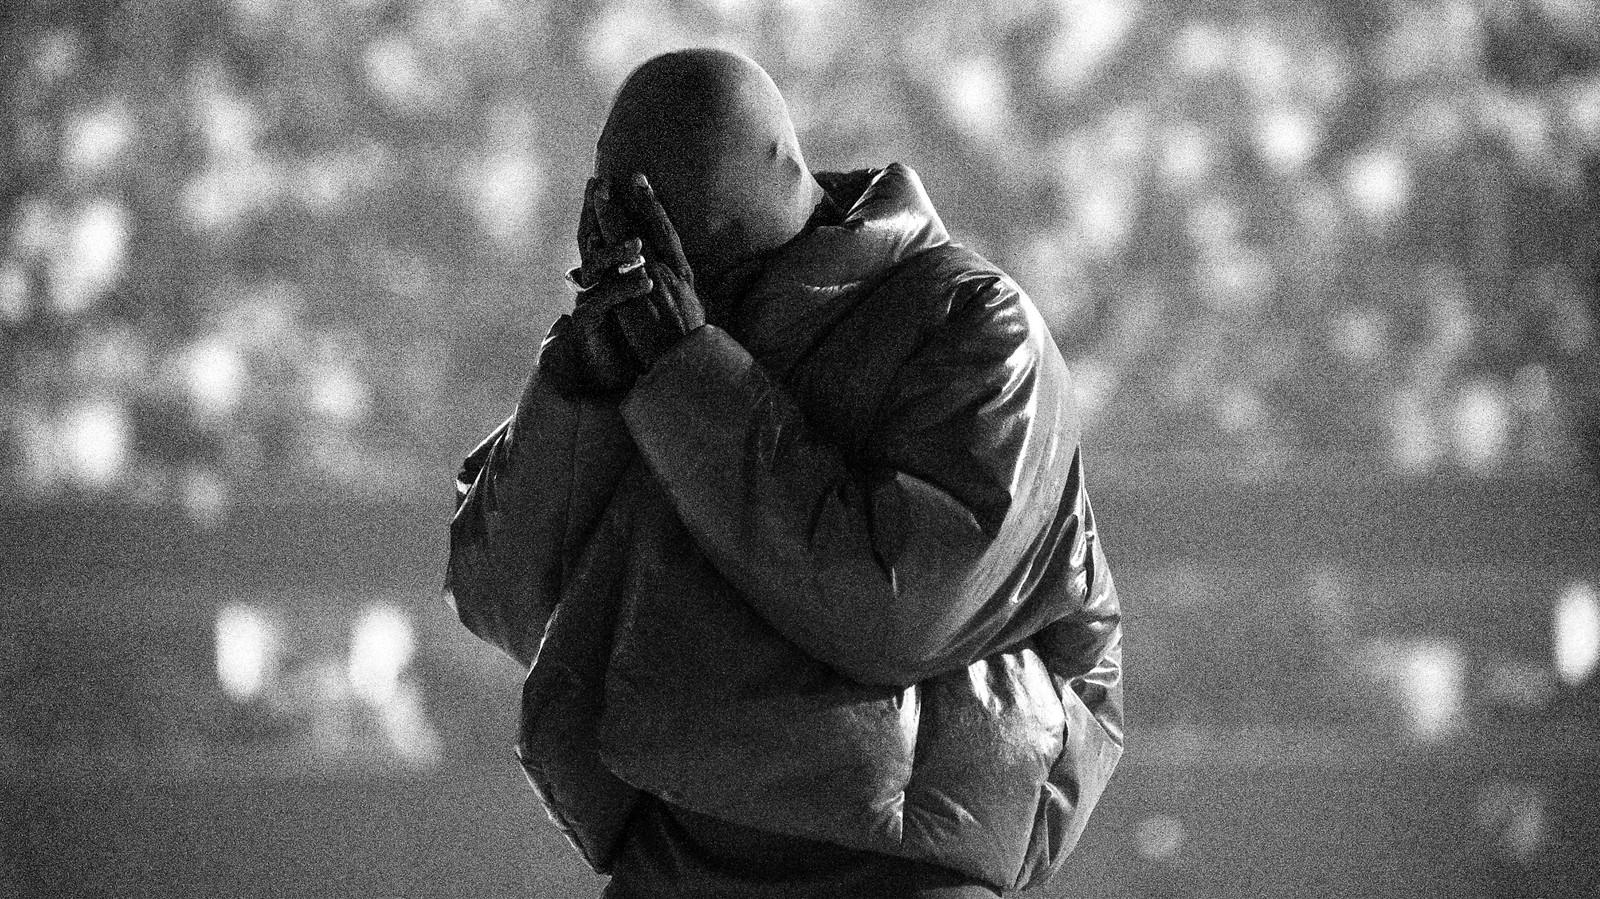 Kanye West Donda Re The Sound Of Surrender Atlantic